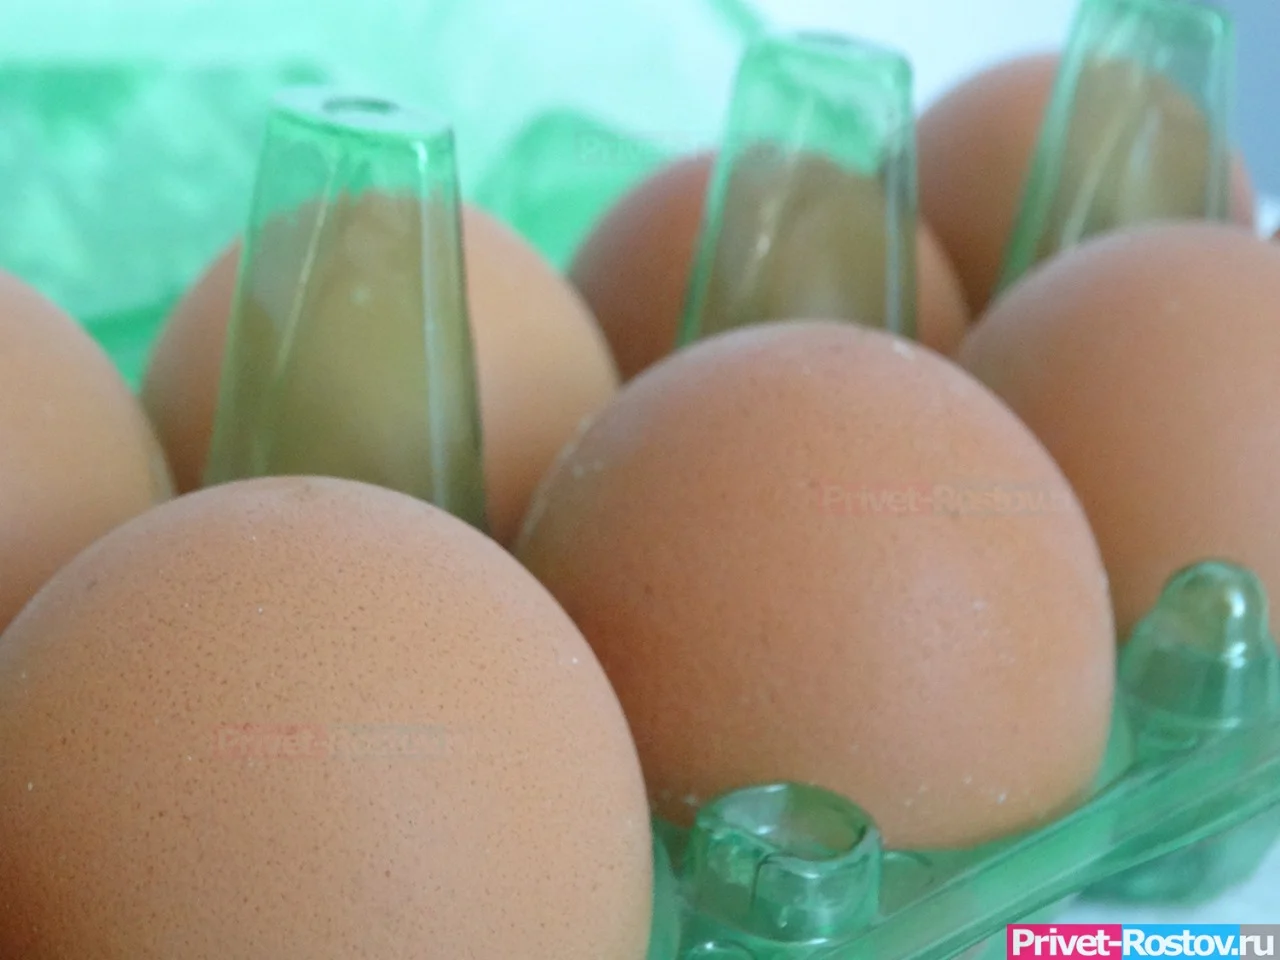 Цены на яйца в Краснодарском крае взлетели перед Пасхой